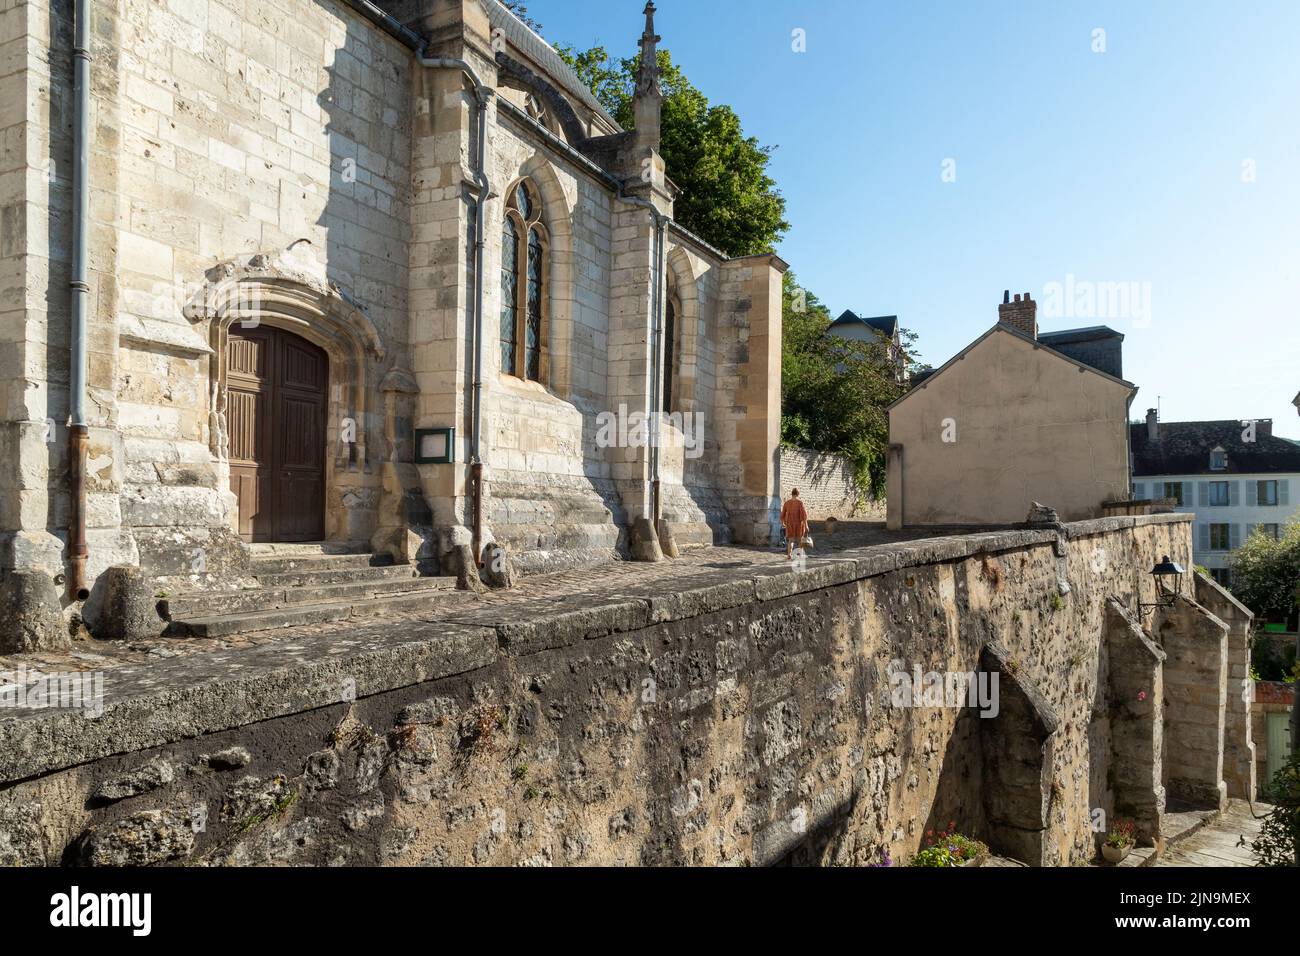 Francia, Val d'Oise, Parco Naturale Regionale Vexin Francais, la Roche Guyon, etichettato Les Plus Beaux Villages de France (i villaggi più belli di F Foto Stock